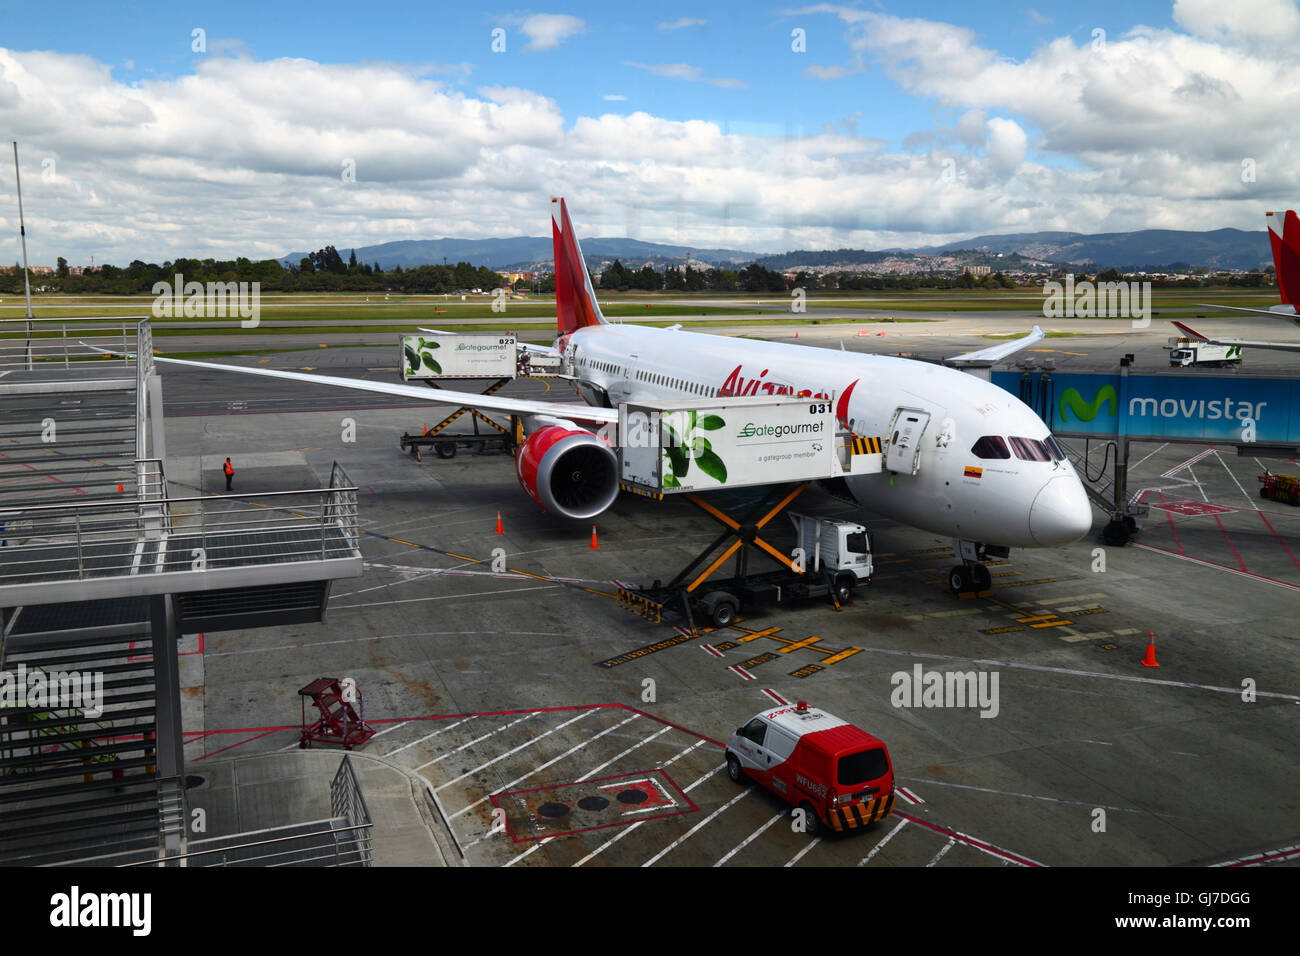 Avianca Airbus A330 sur la rampe d'accès à l'extérieur du terminal de l'aéroport international El Dorado, Bogotá, Colombie Banque D'Images